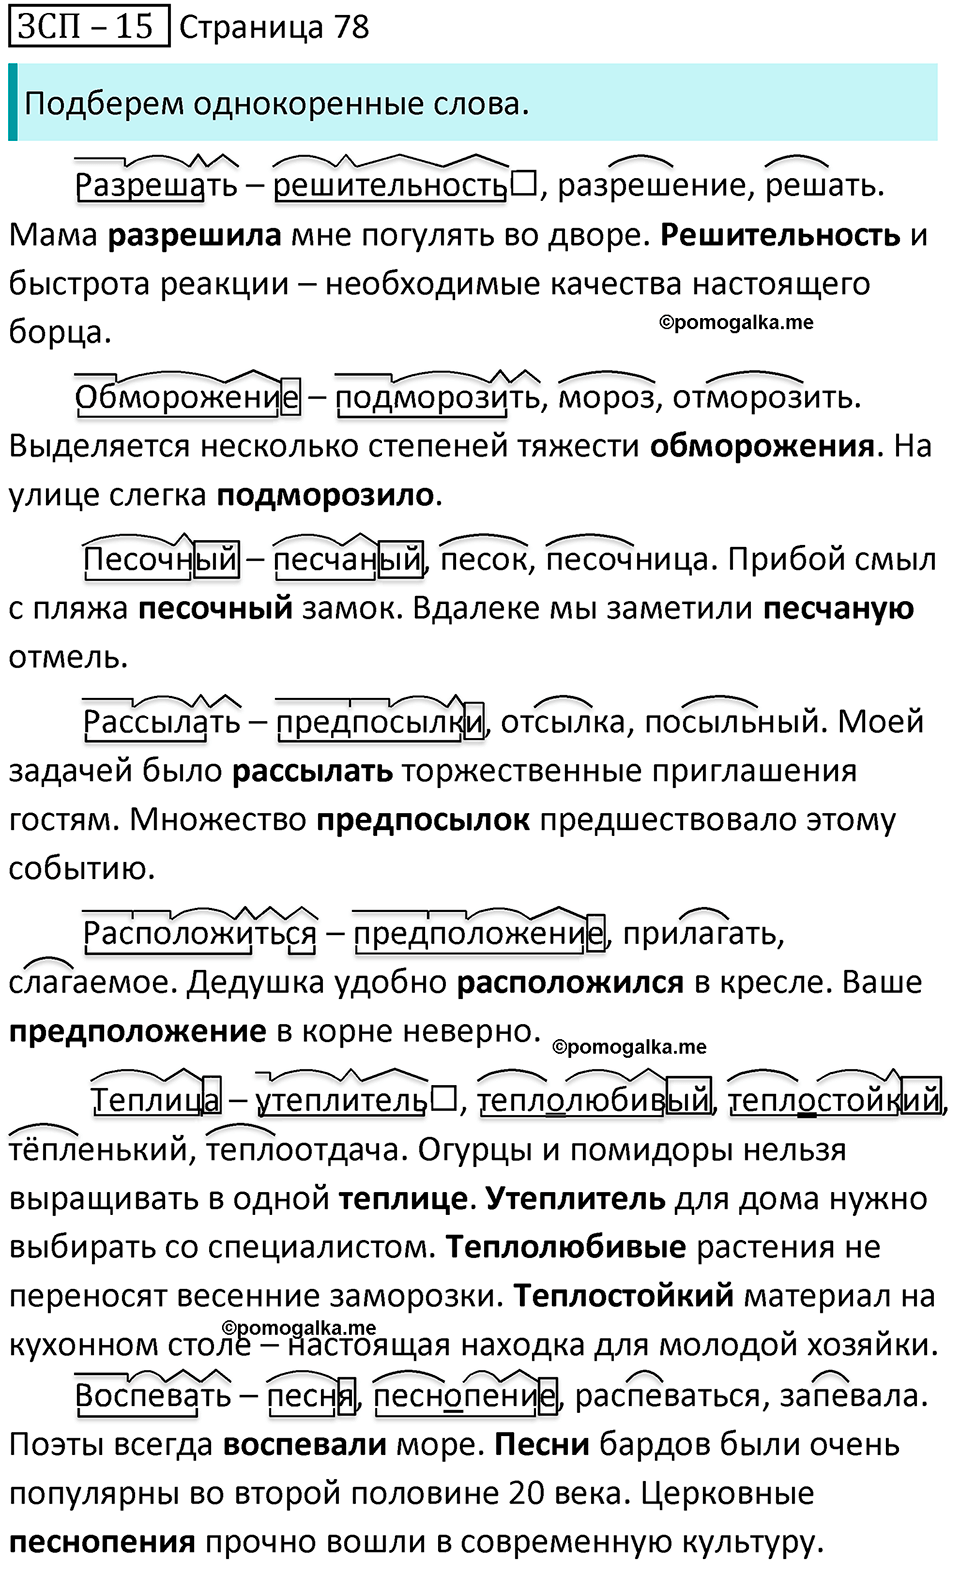 часть 2 страница 78 ЗСП-15 русский язык 5 класс Разумовская, Львова, Капинос, Львов 2021